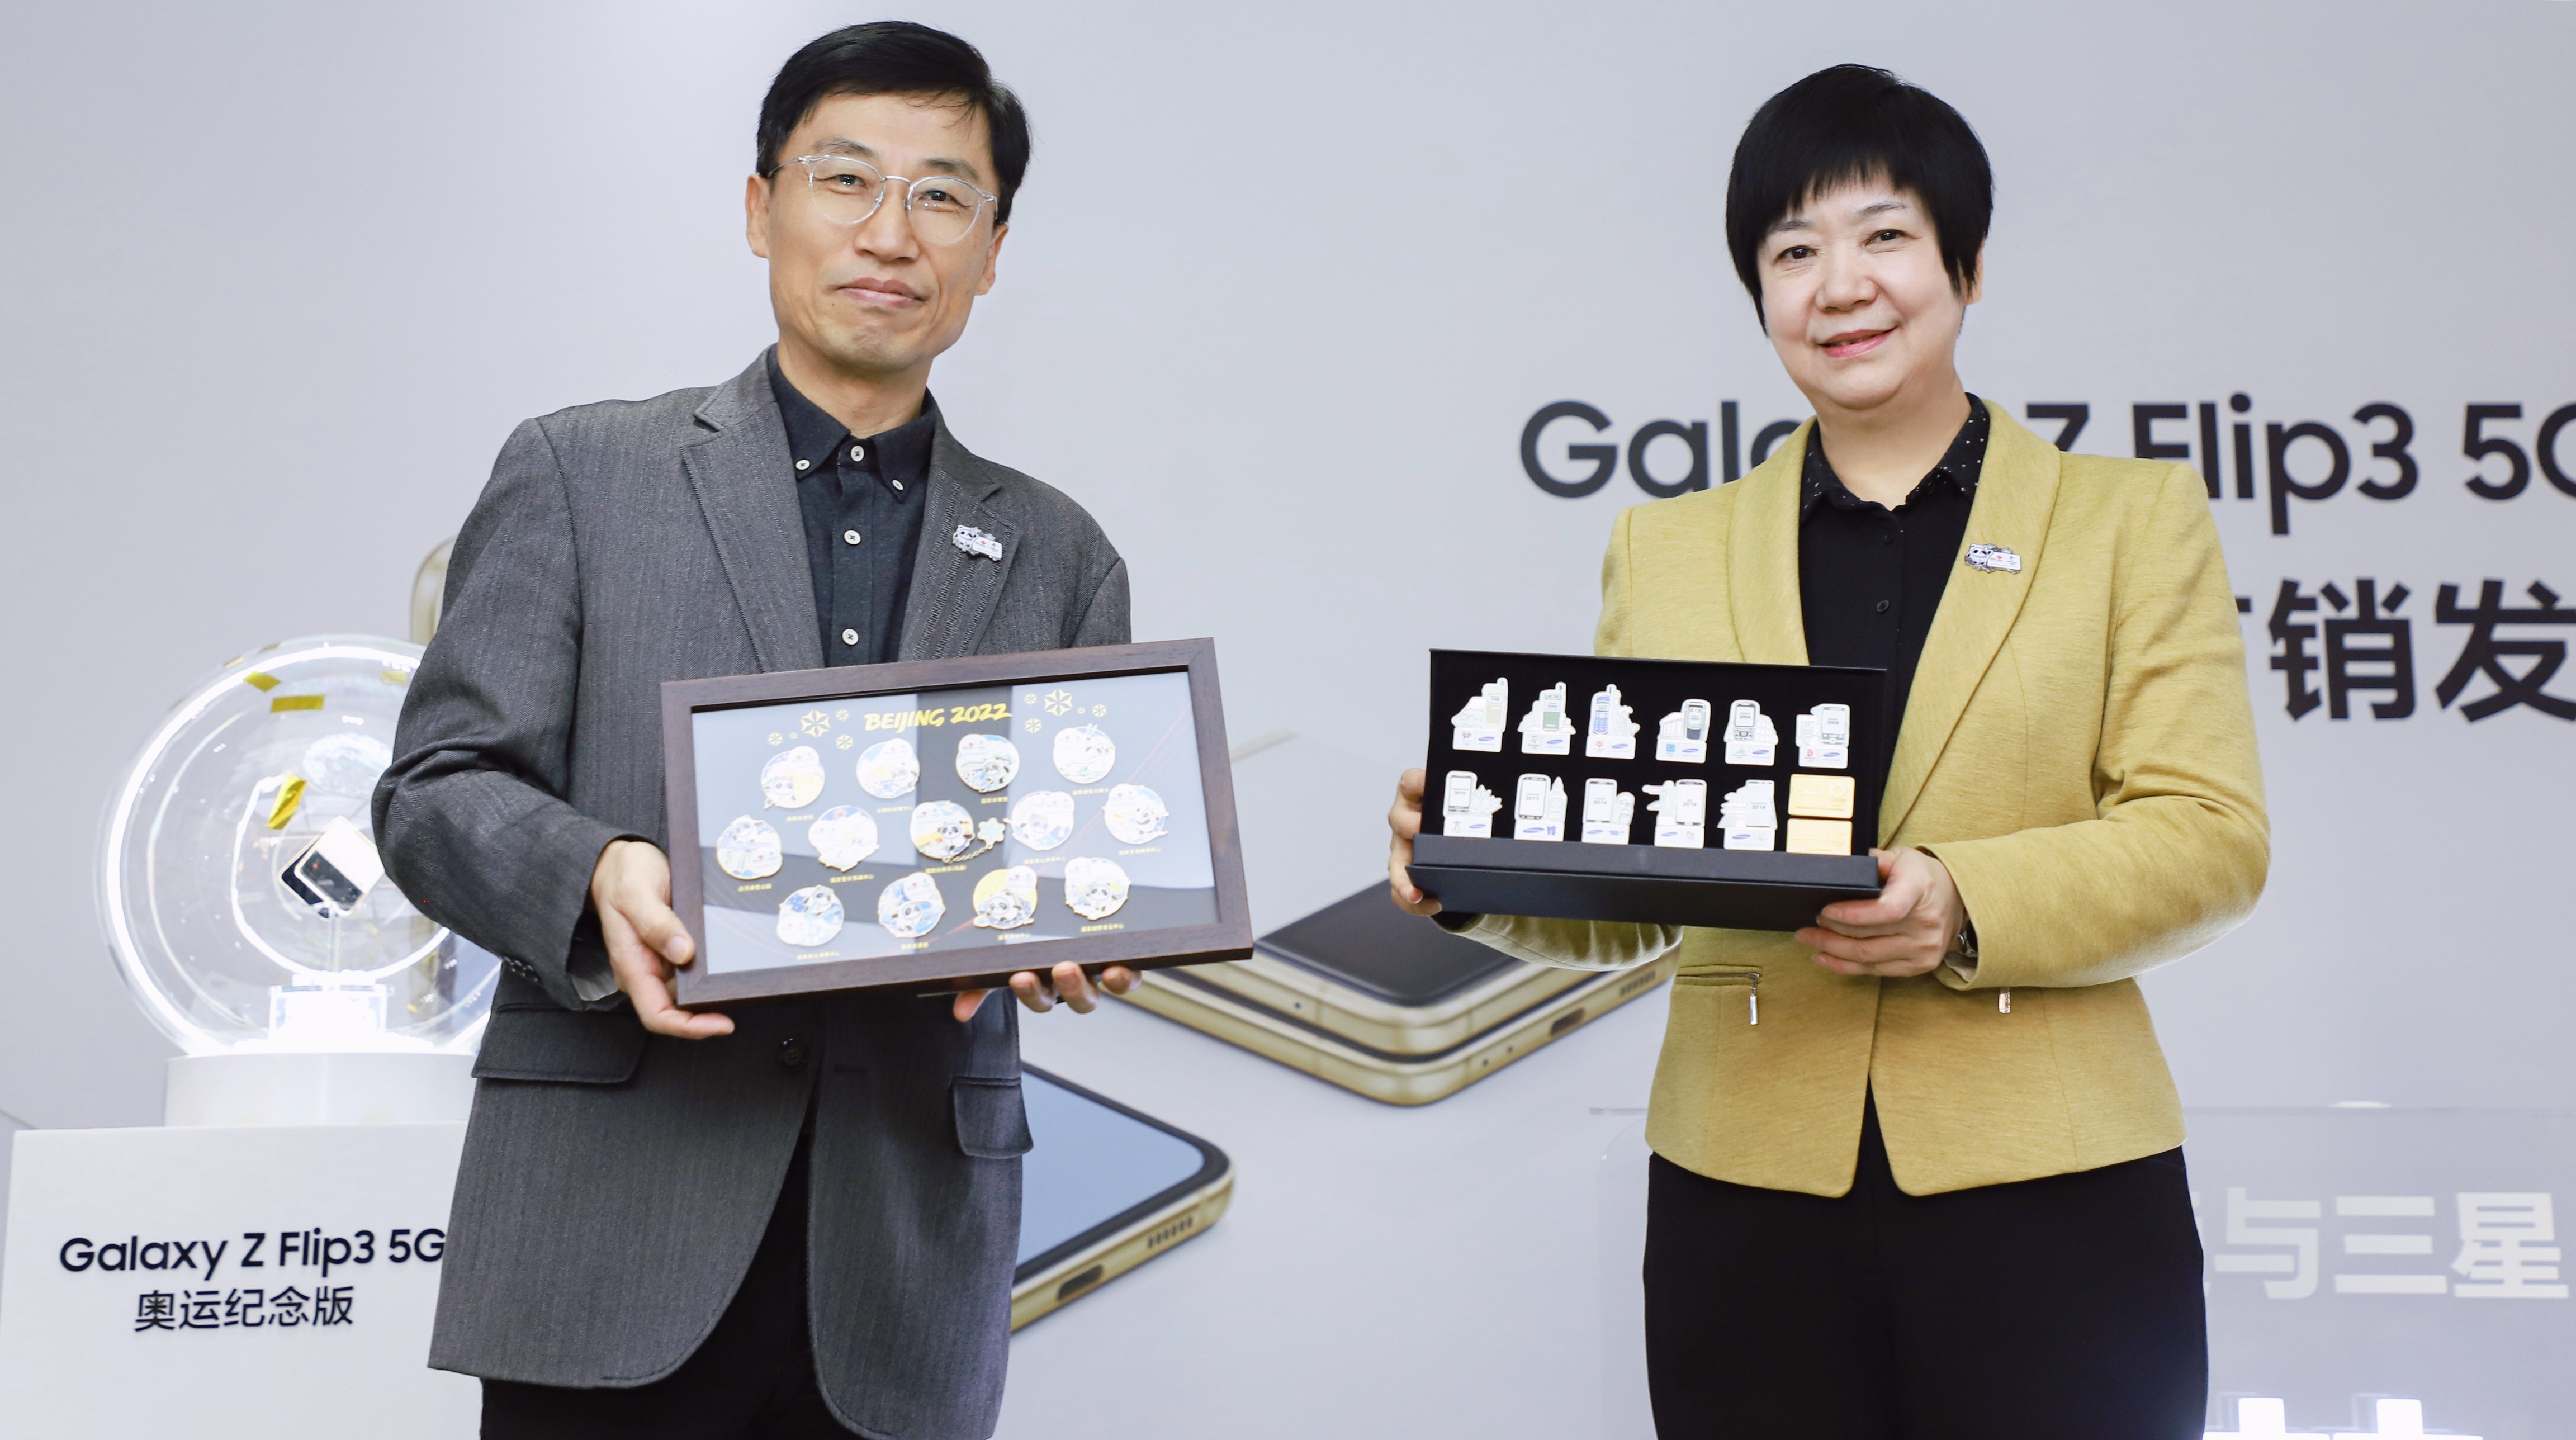 共迎冬奥 共创未来 三星电子与中国联通举办Galaxy Z Flip3 5G奥运纪念版首销仪式